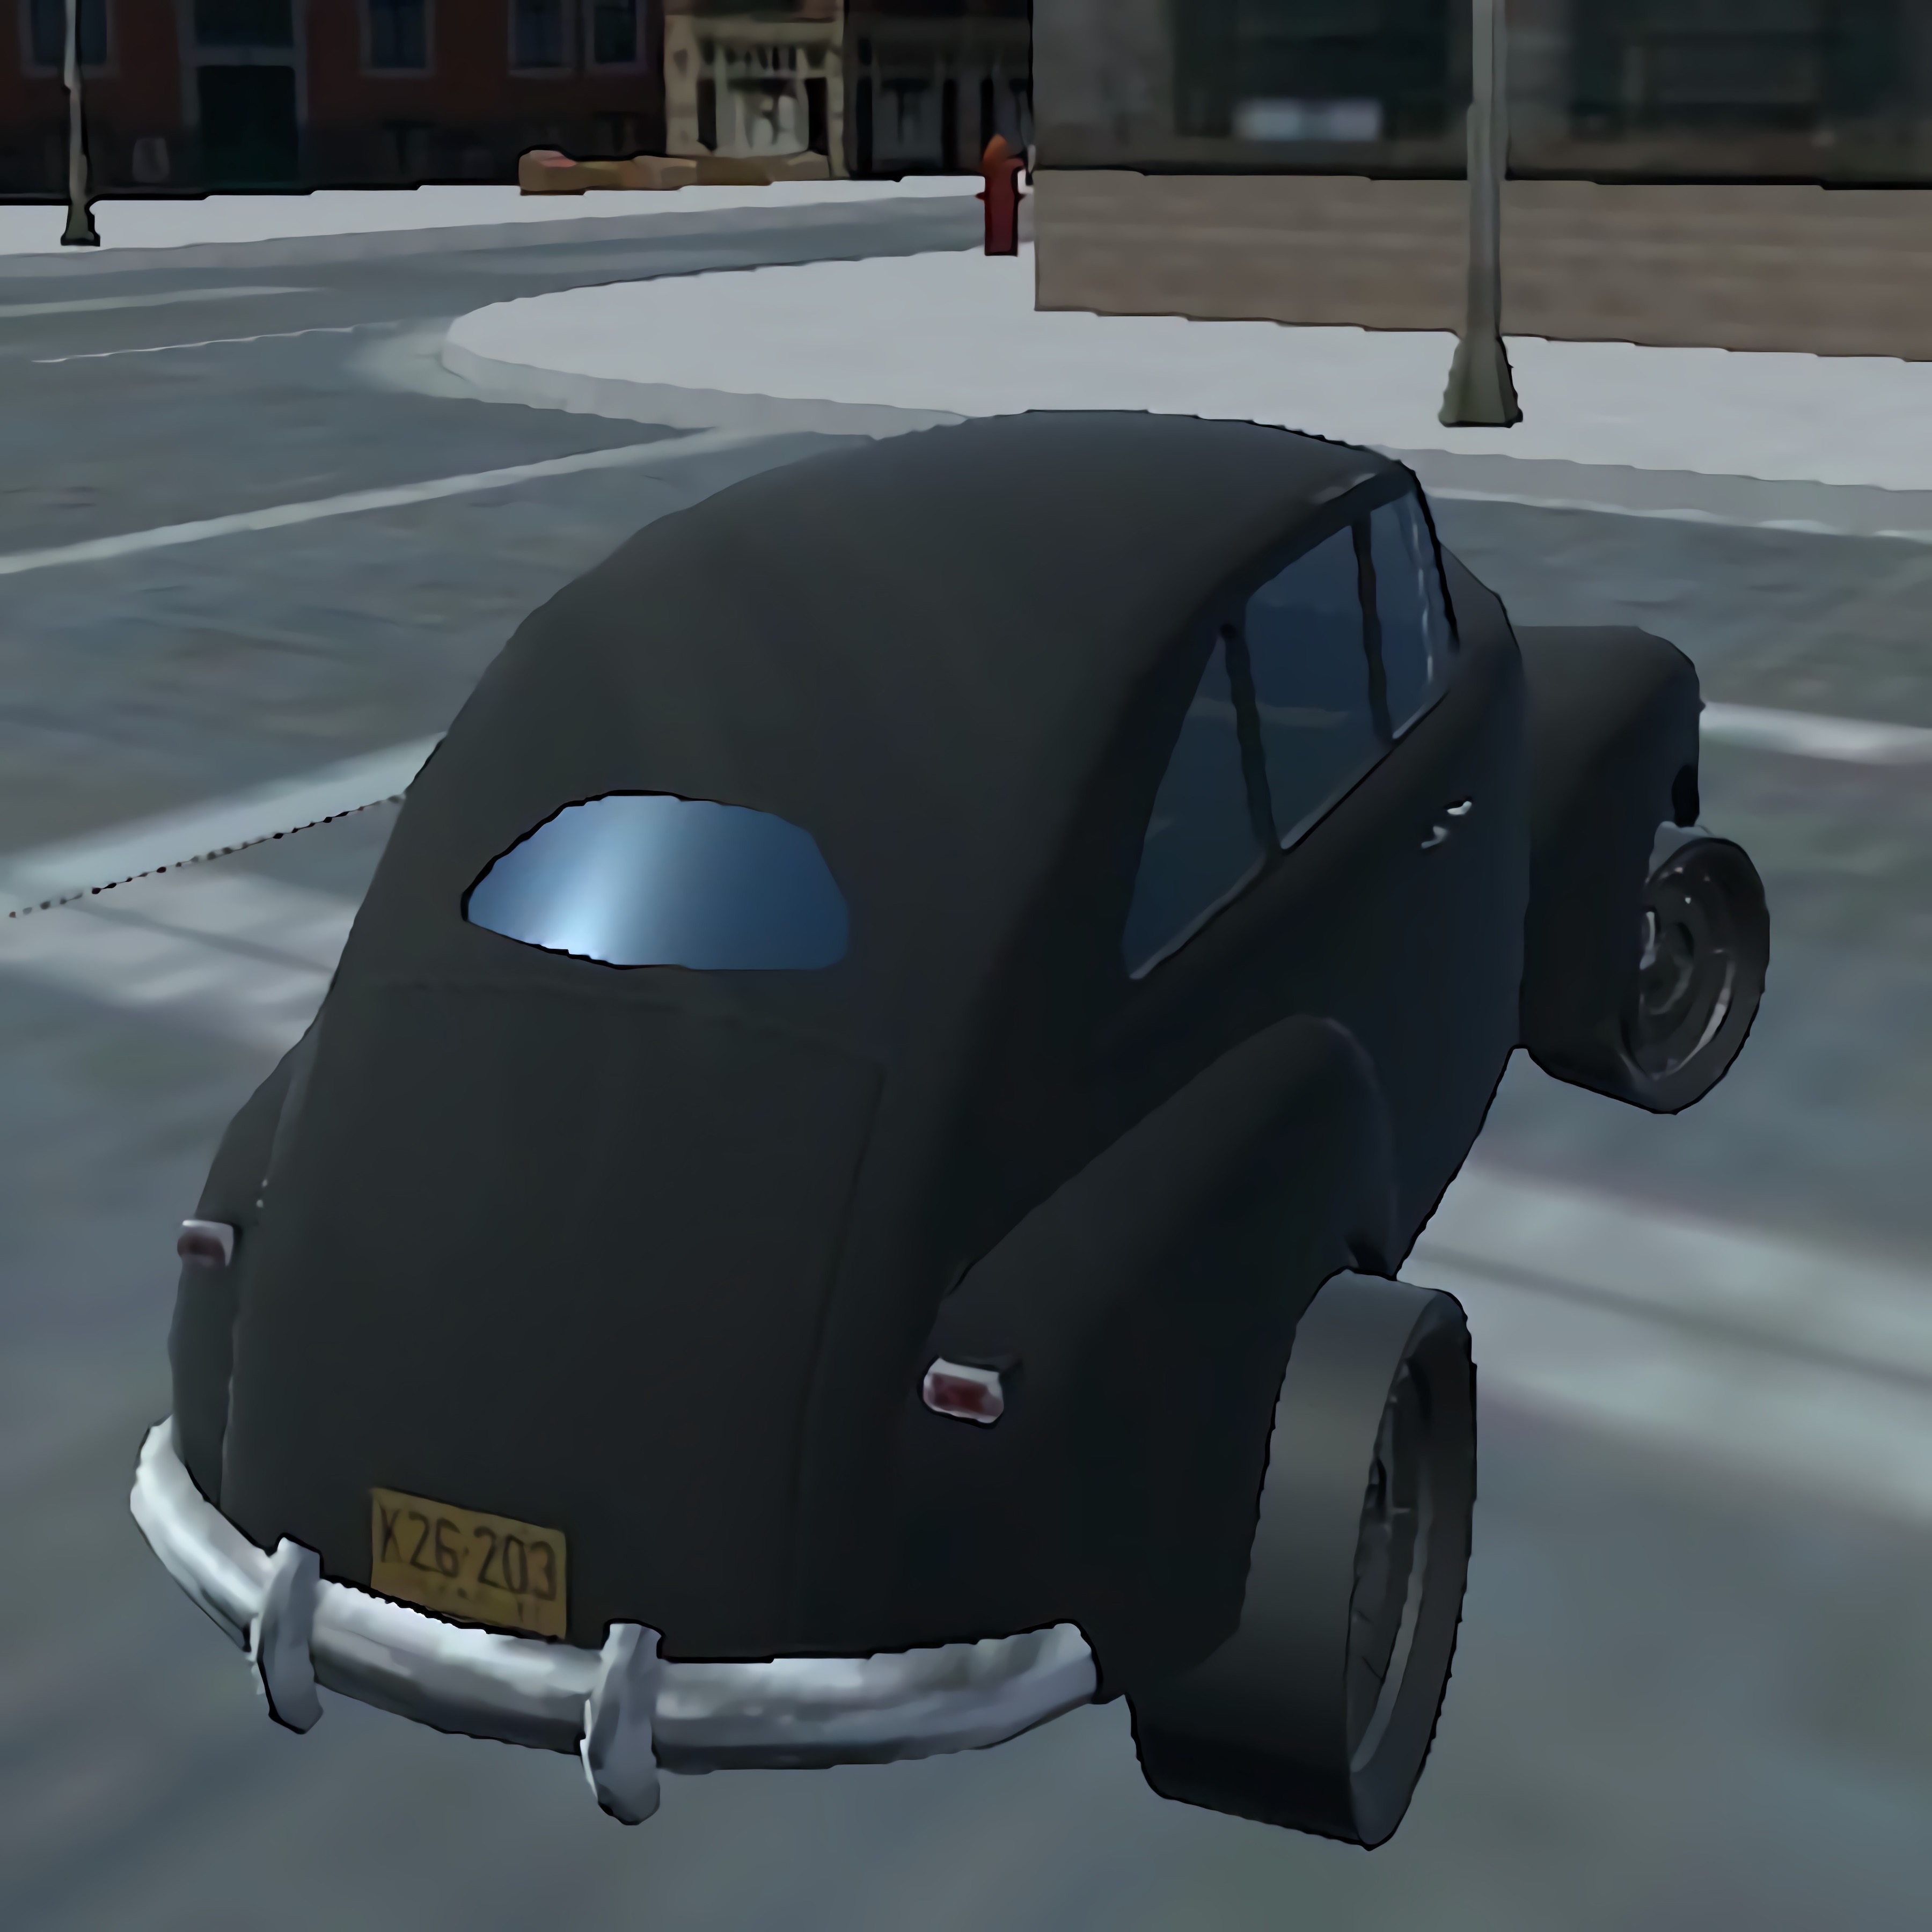 Mafia Car 3D - Time Record Challenge